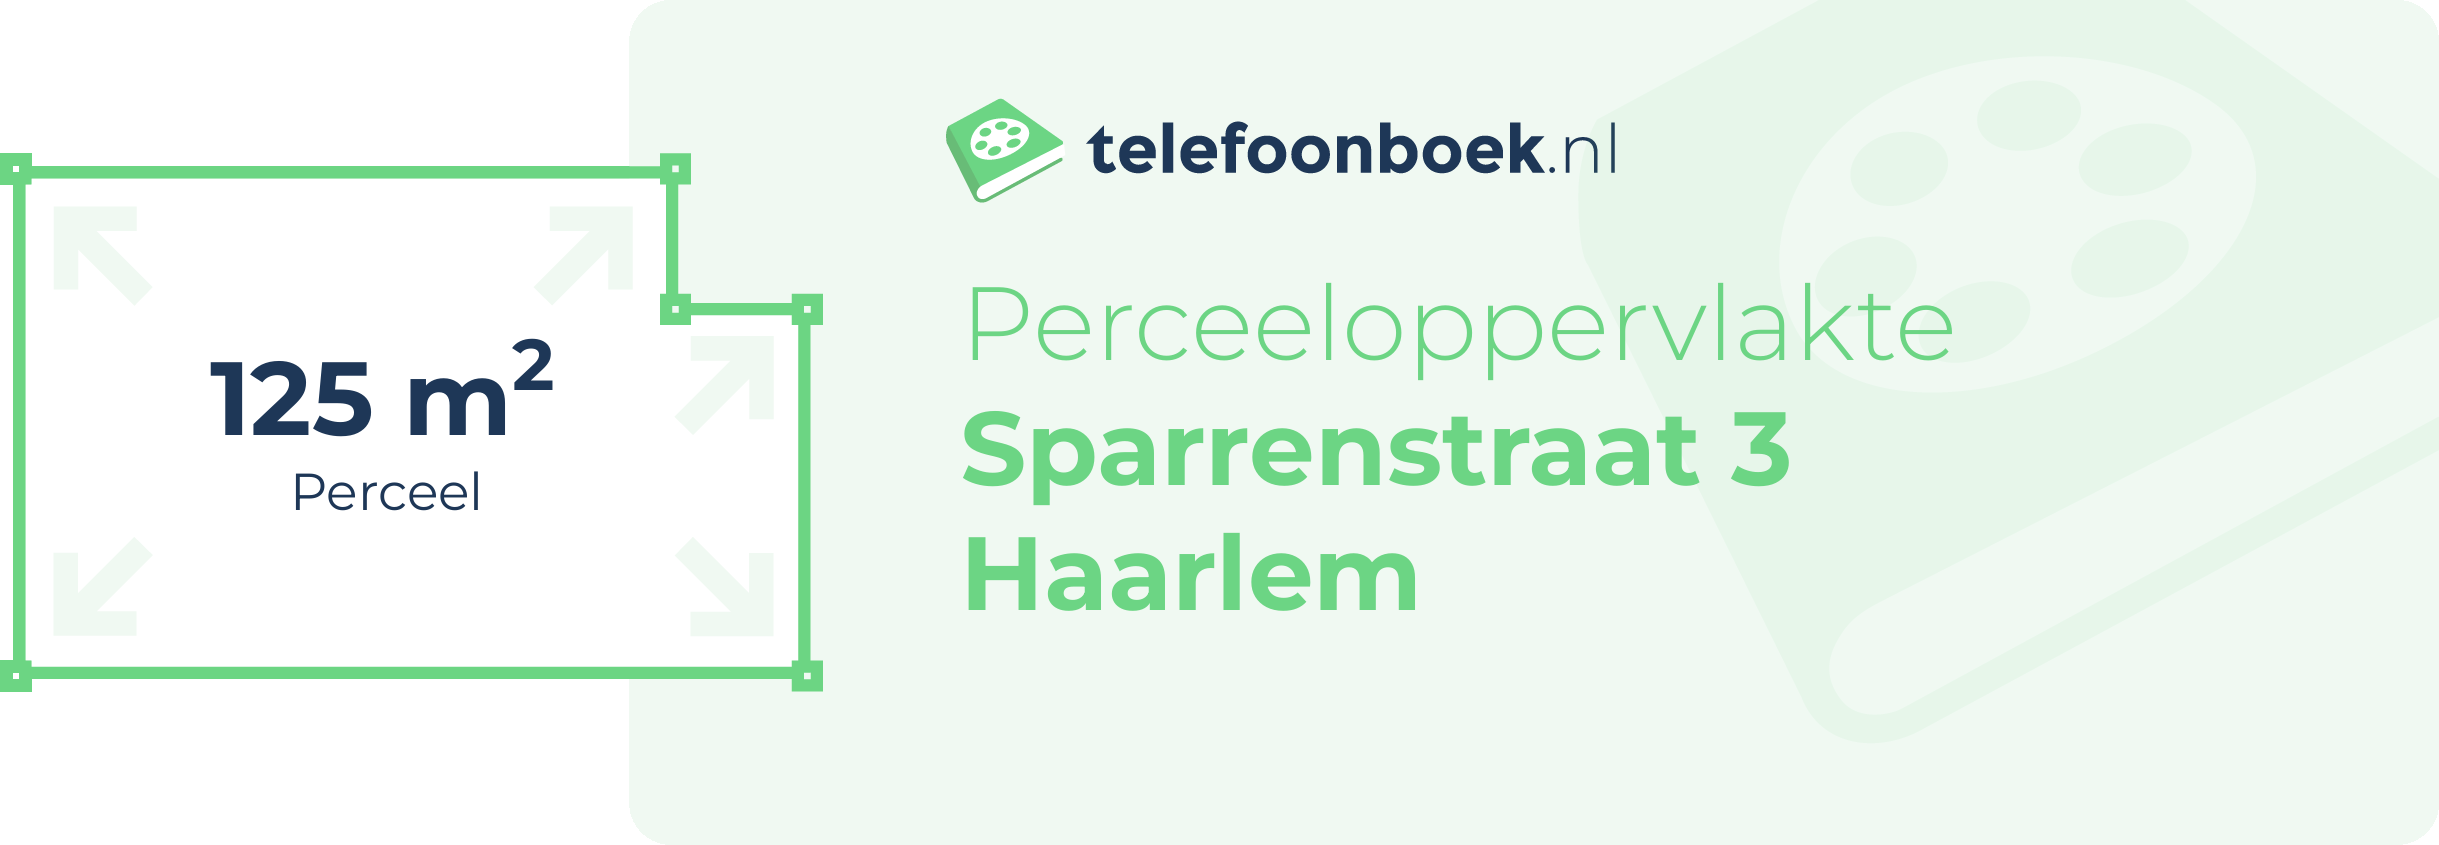 Perceeloppervlakte Sparrenstraat 3 Haarlem